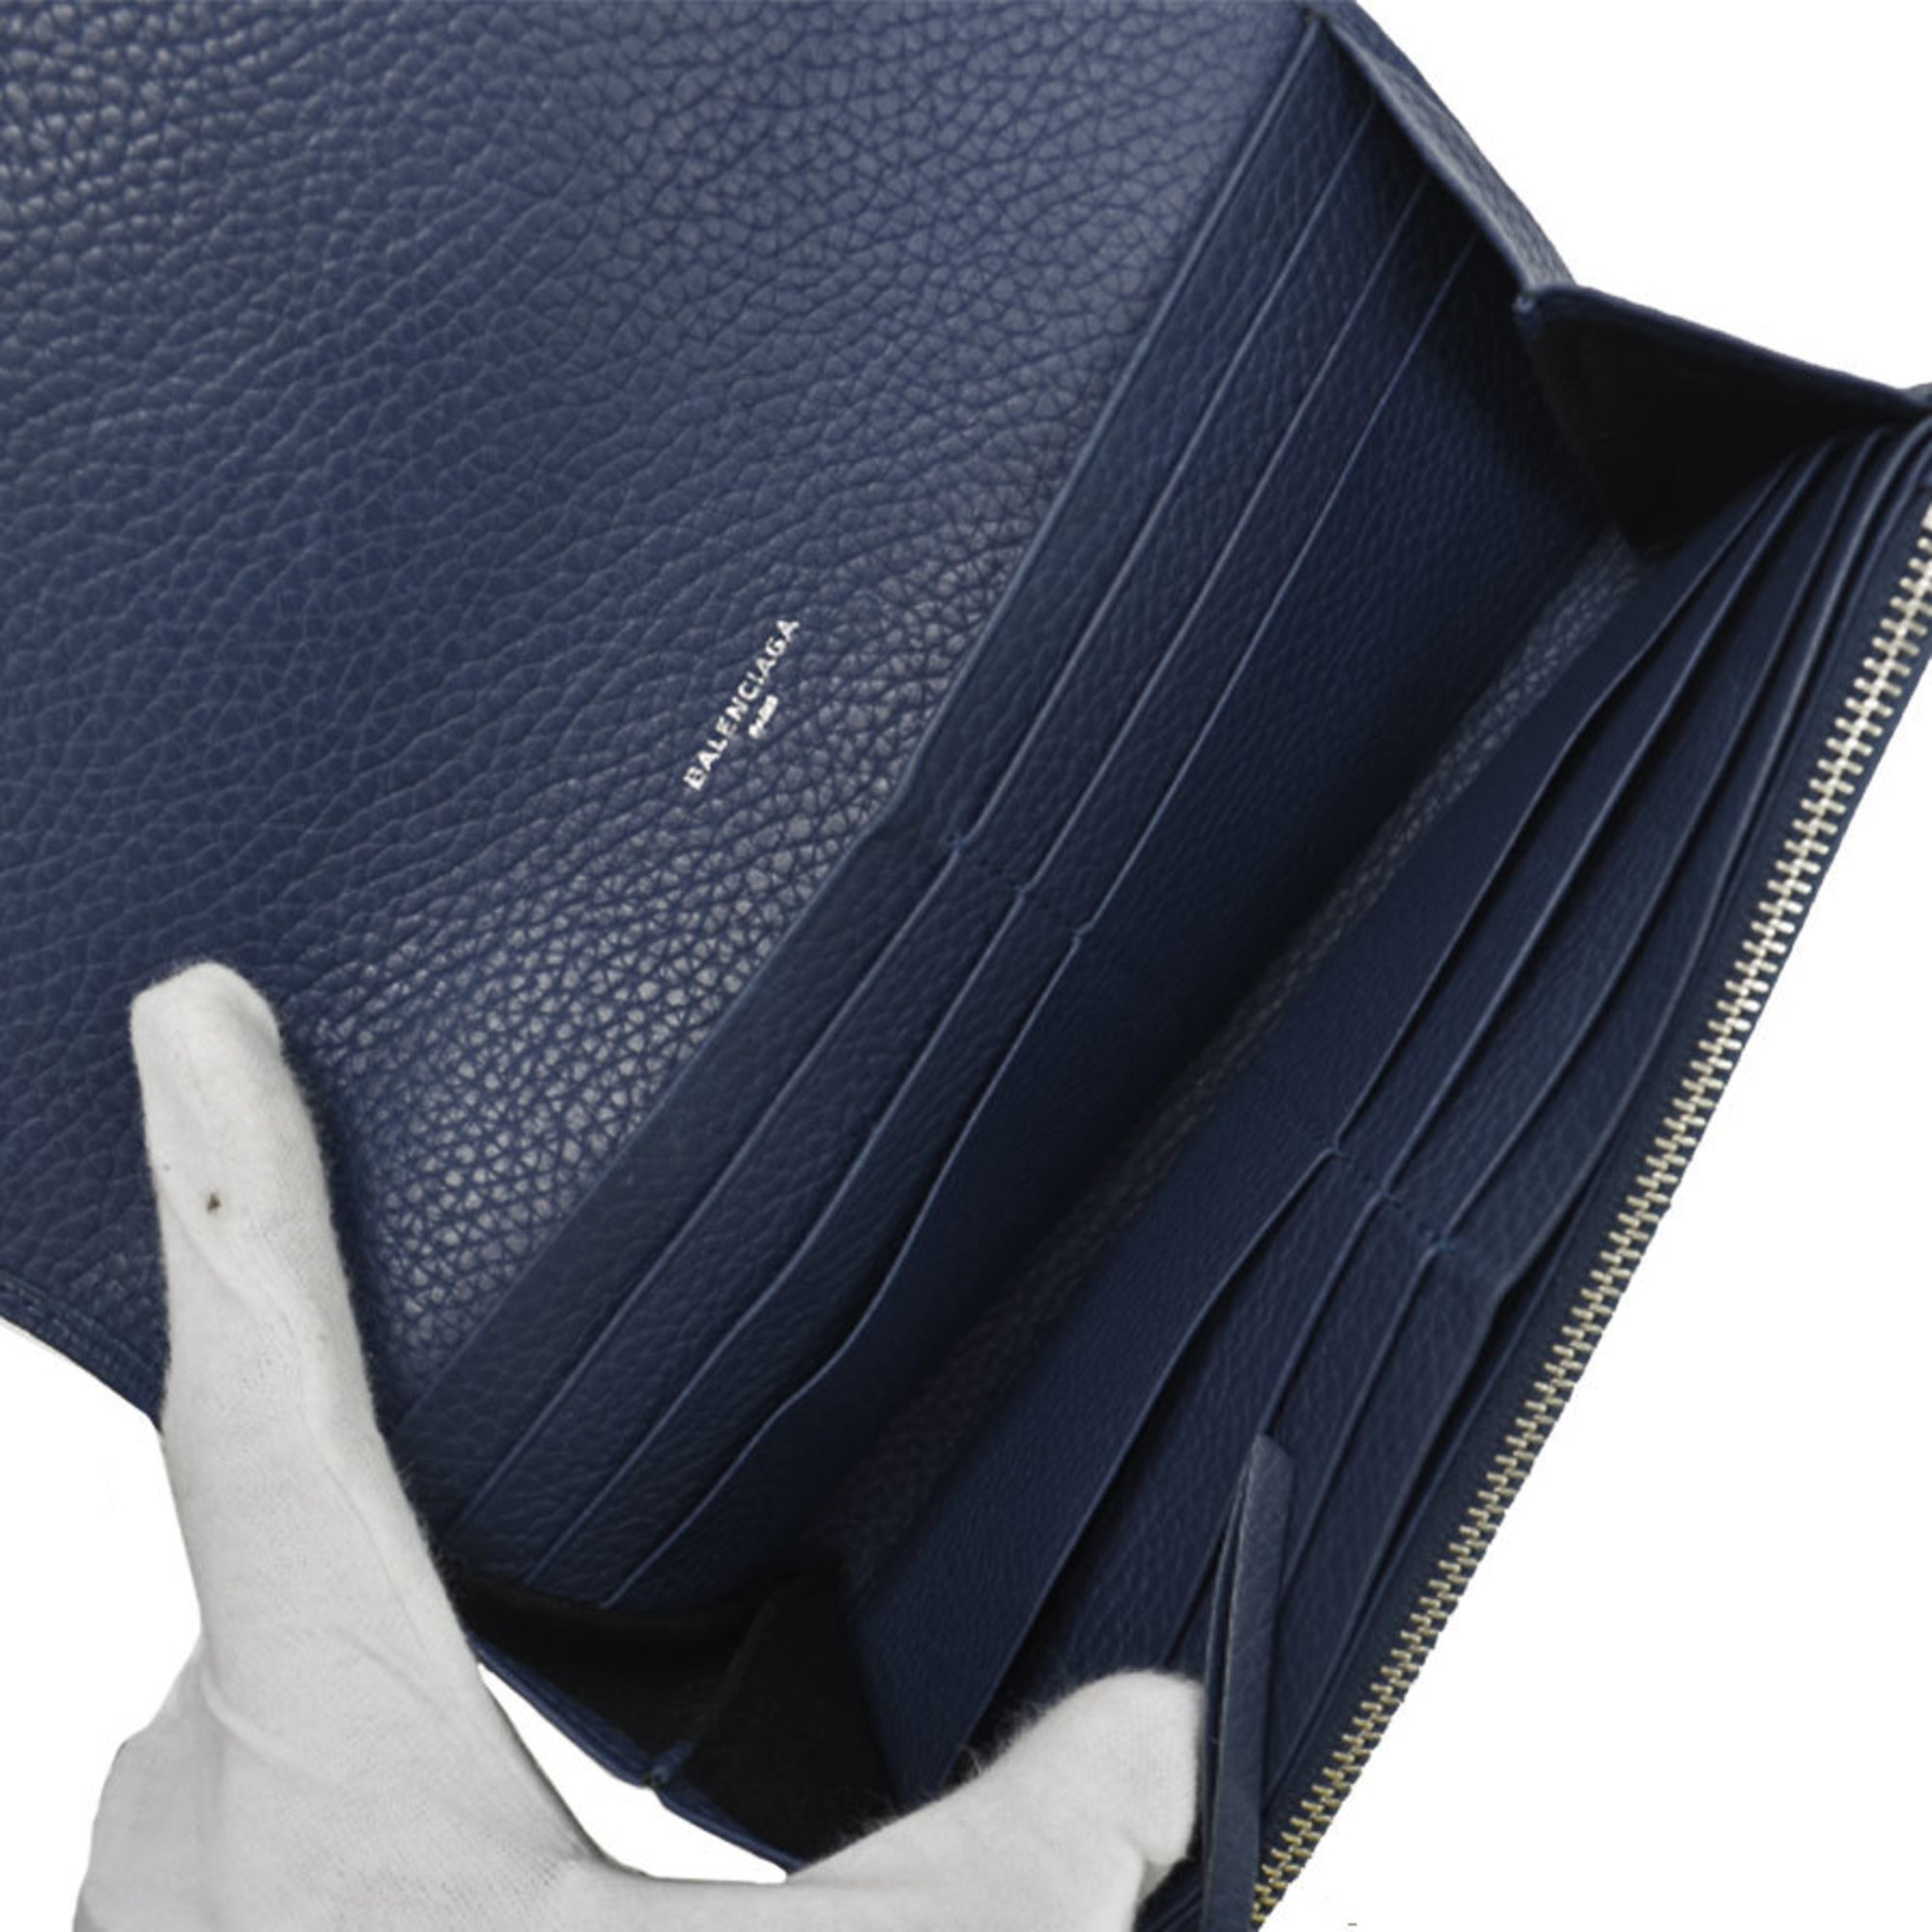 Balenciaga BALENCIAGA long wallet navy leather folio women's